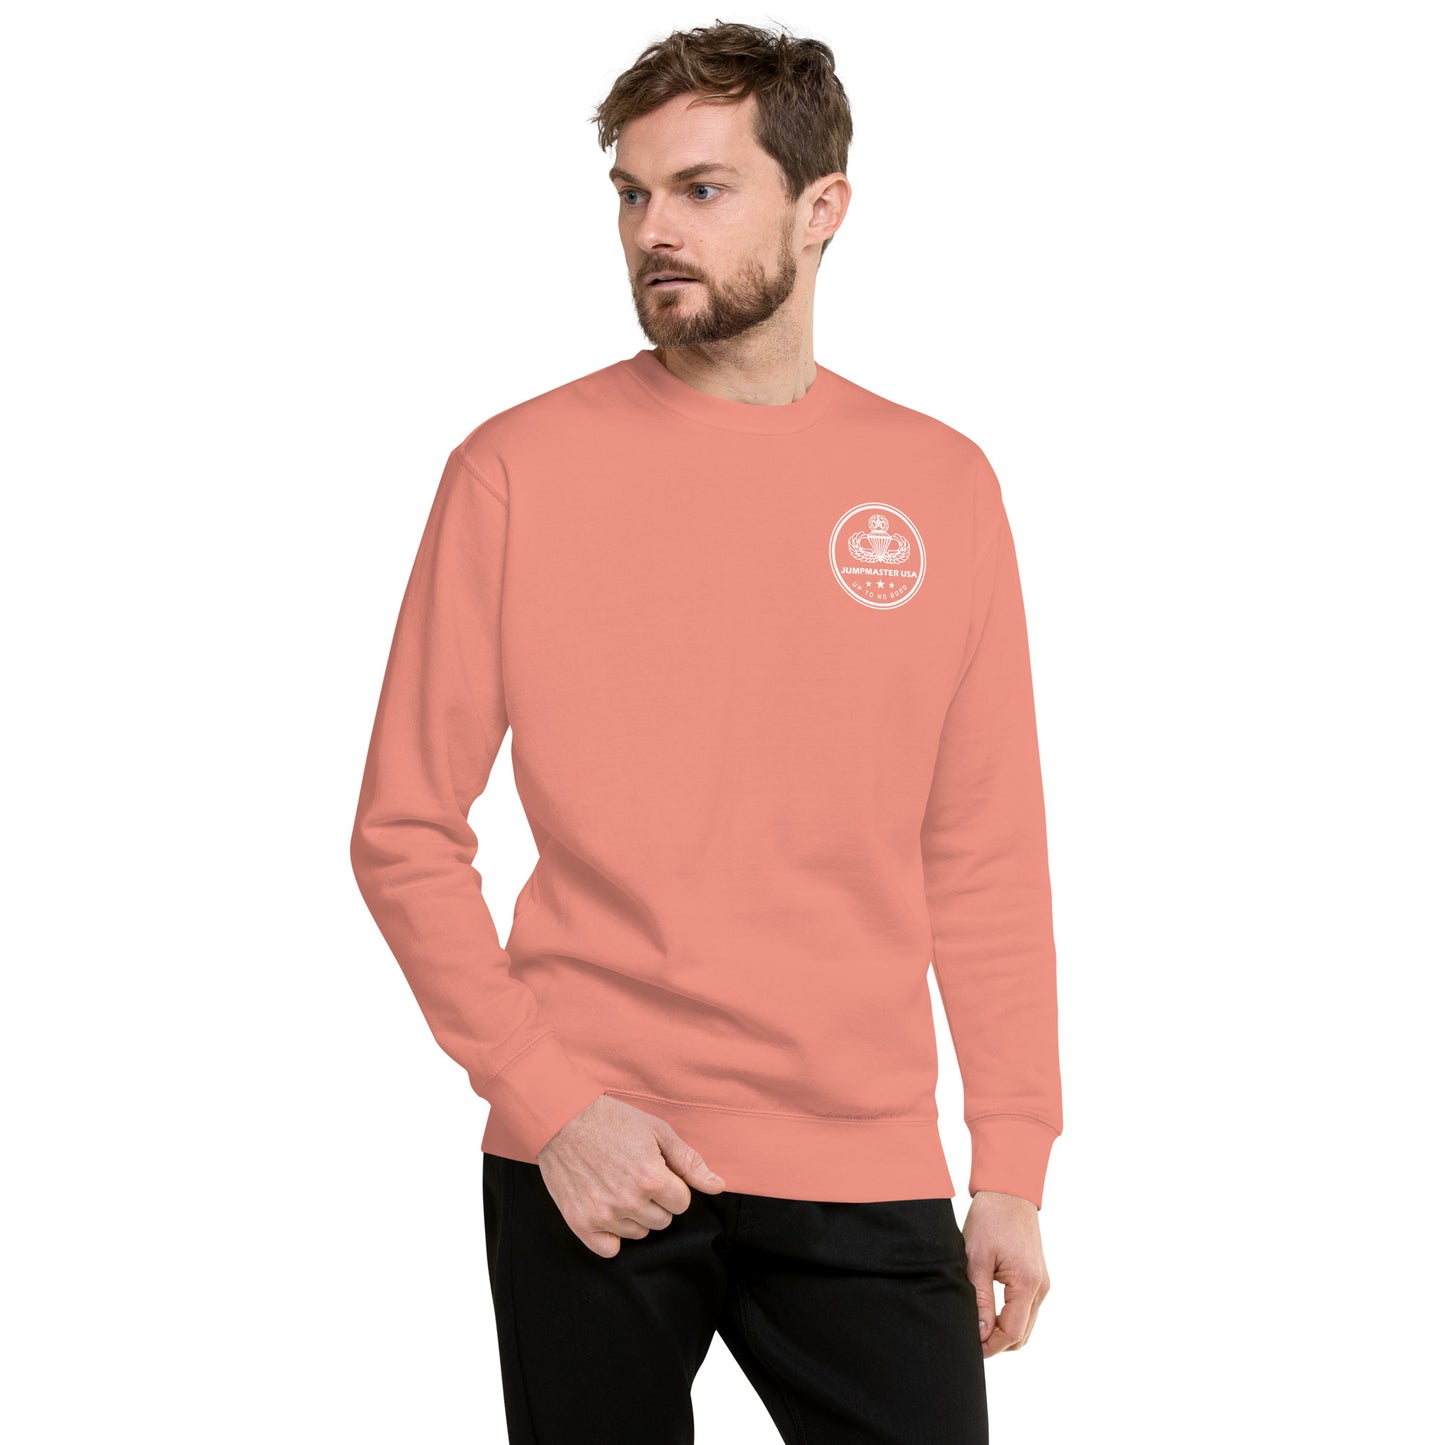 Market Garden Sweater